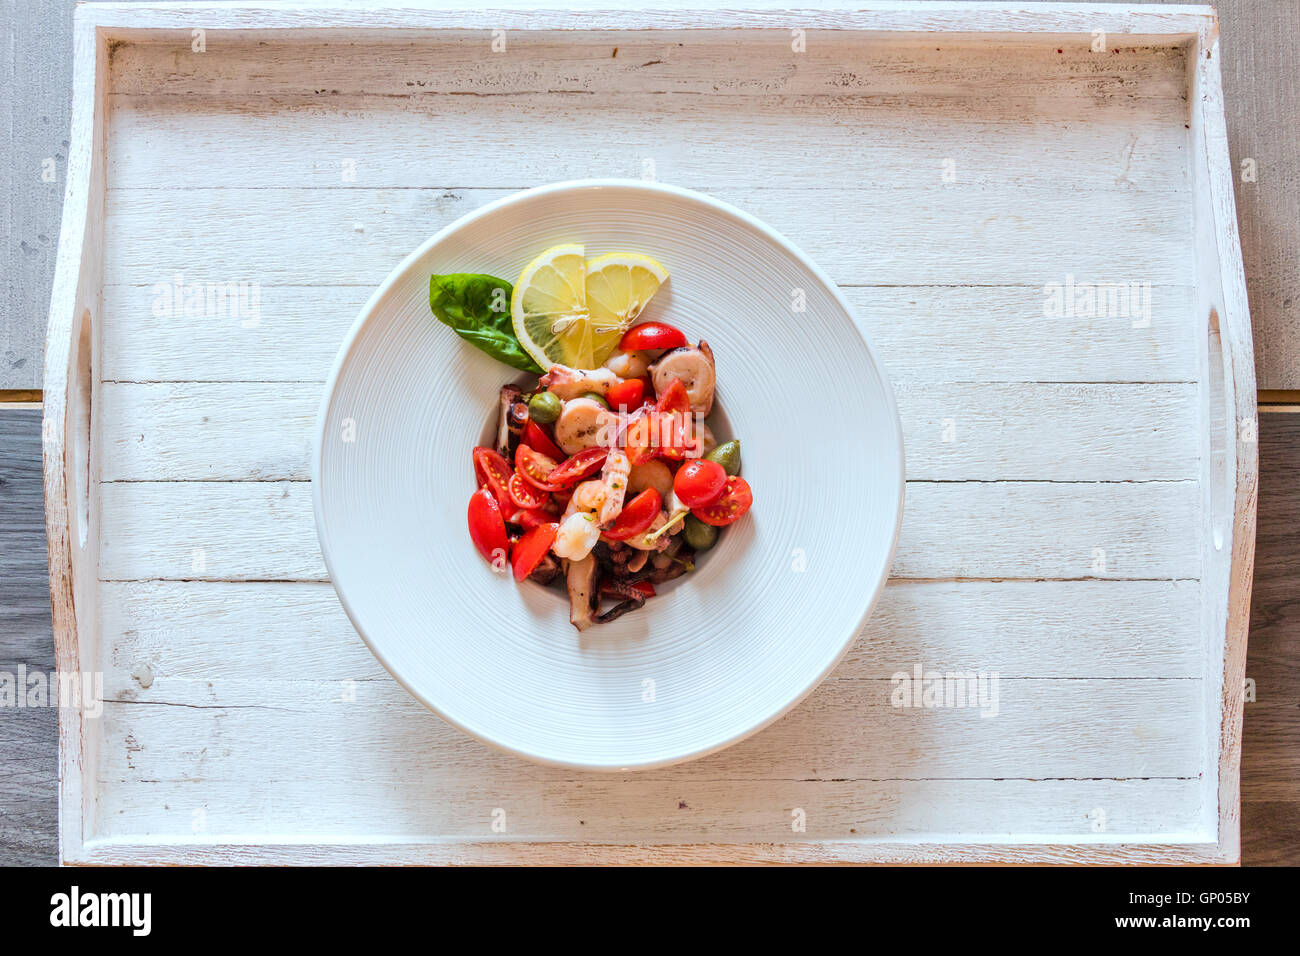 Piatti a base di frutti di mare freschi accompagnati da pomodori e verdure  un piatto tipico della cucina italiana e della dieta mediterranea Foto  stock - Alamy